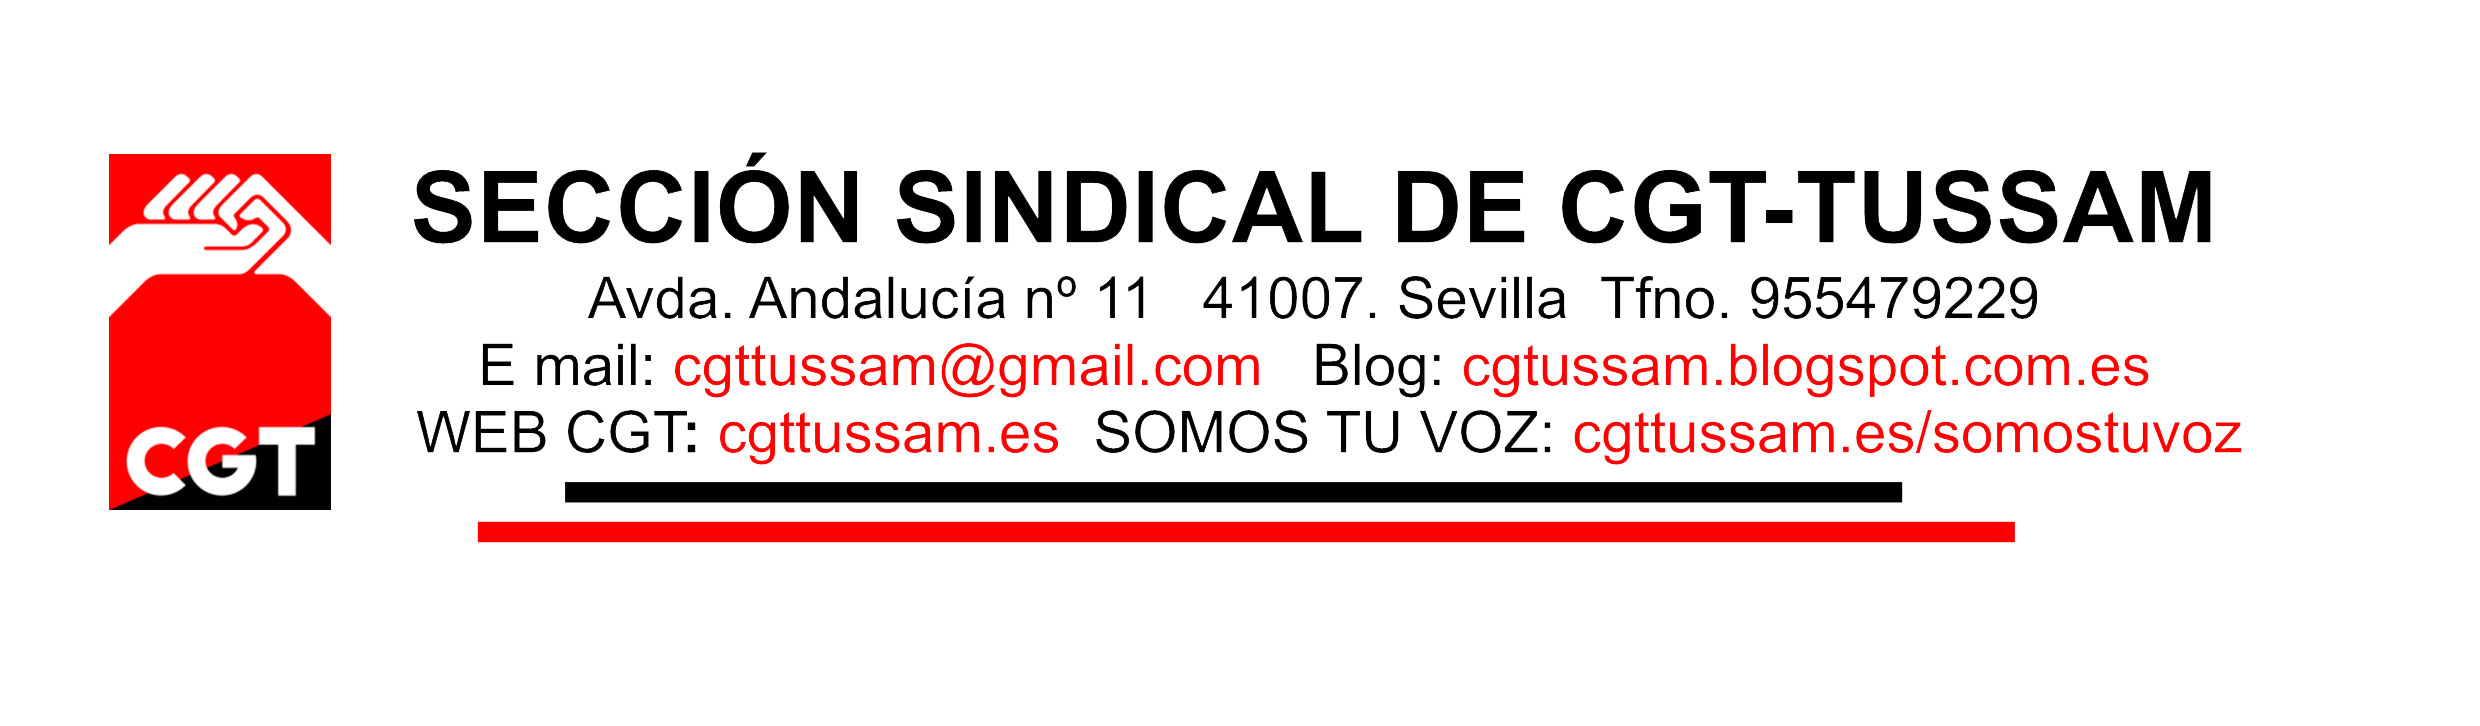 Encabezado 2016 SECCIN SINDICAL DE CGT 1